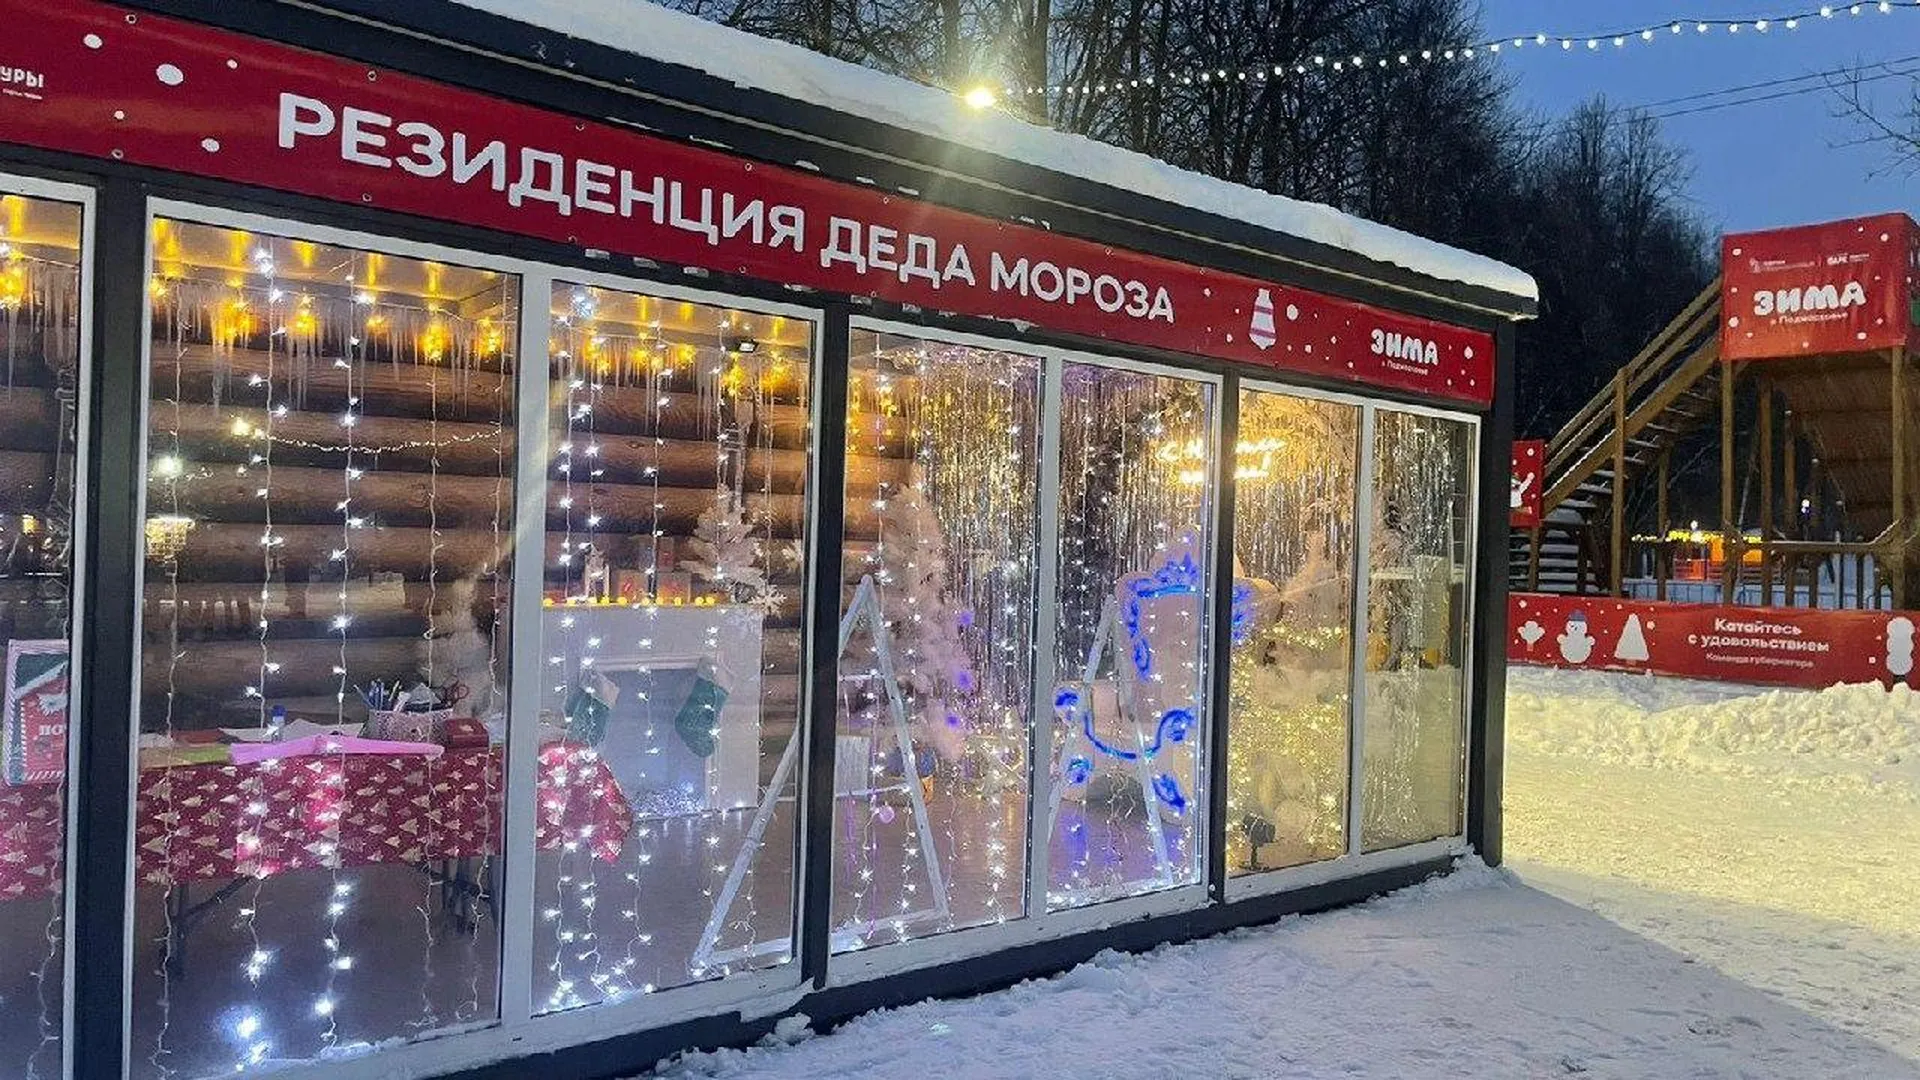 Чеховская резиденция Деда Мороза стала лучшей в регионе